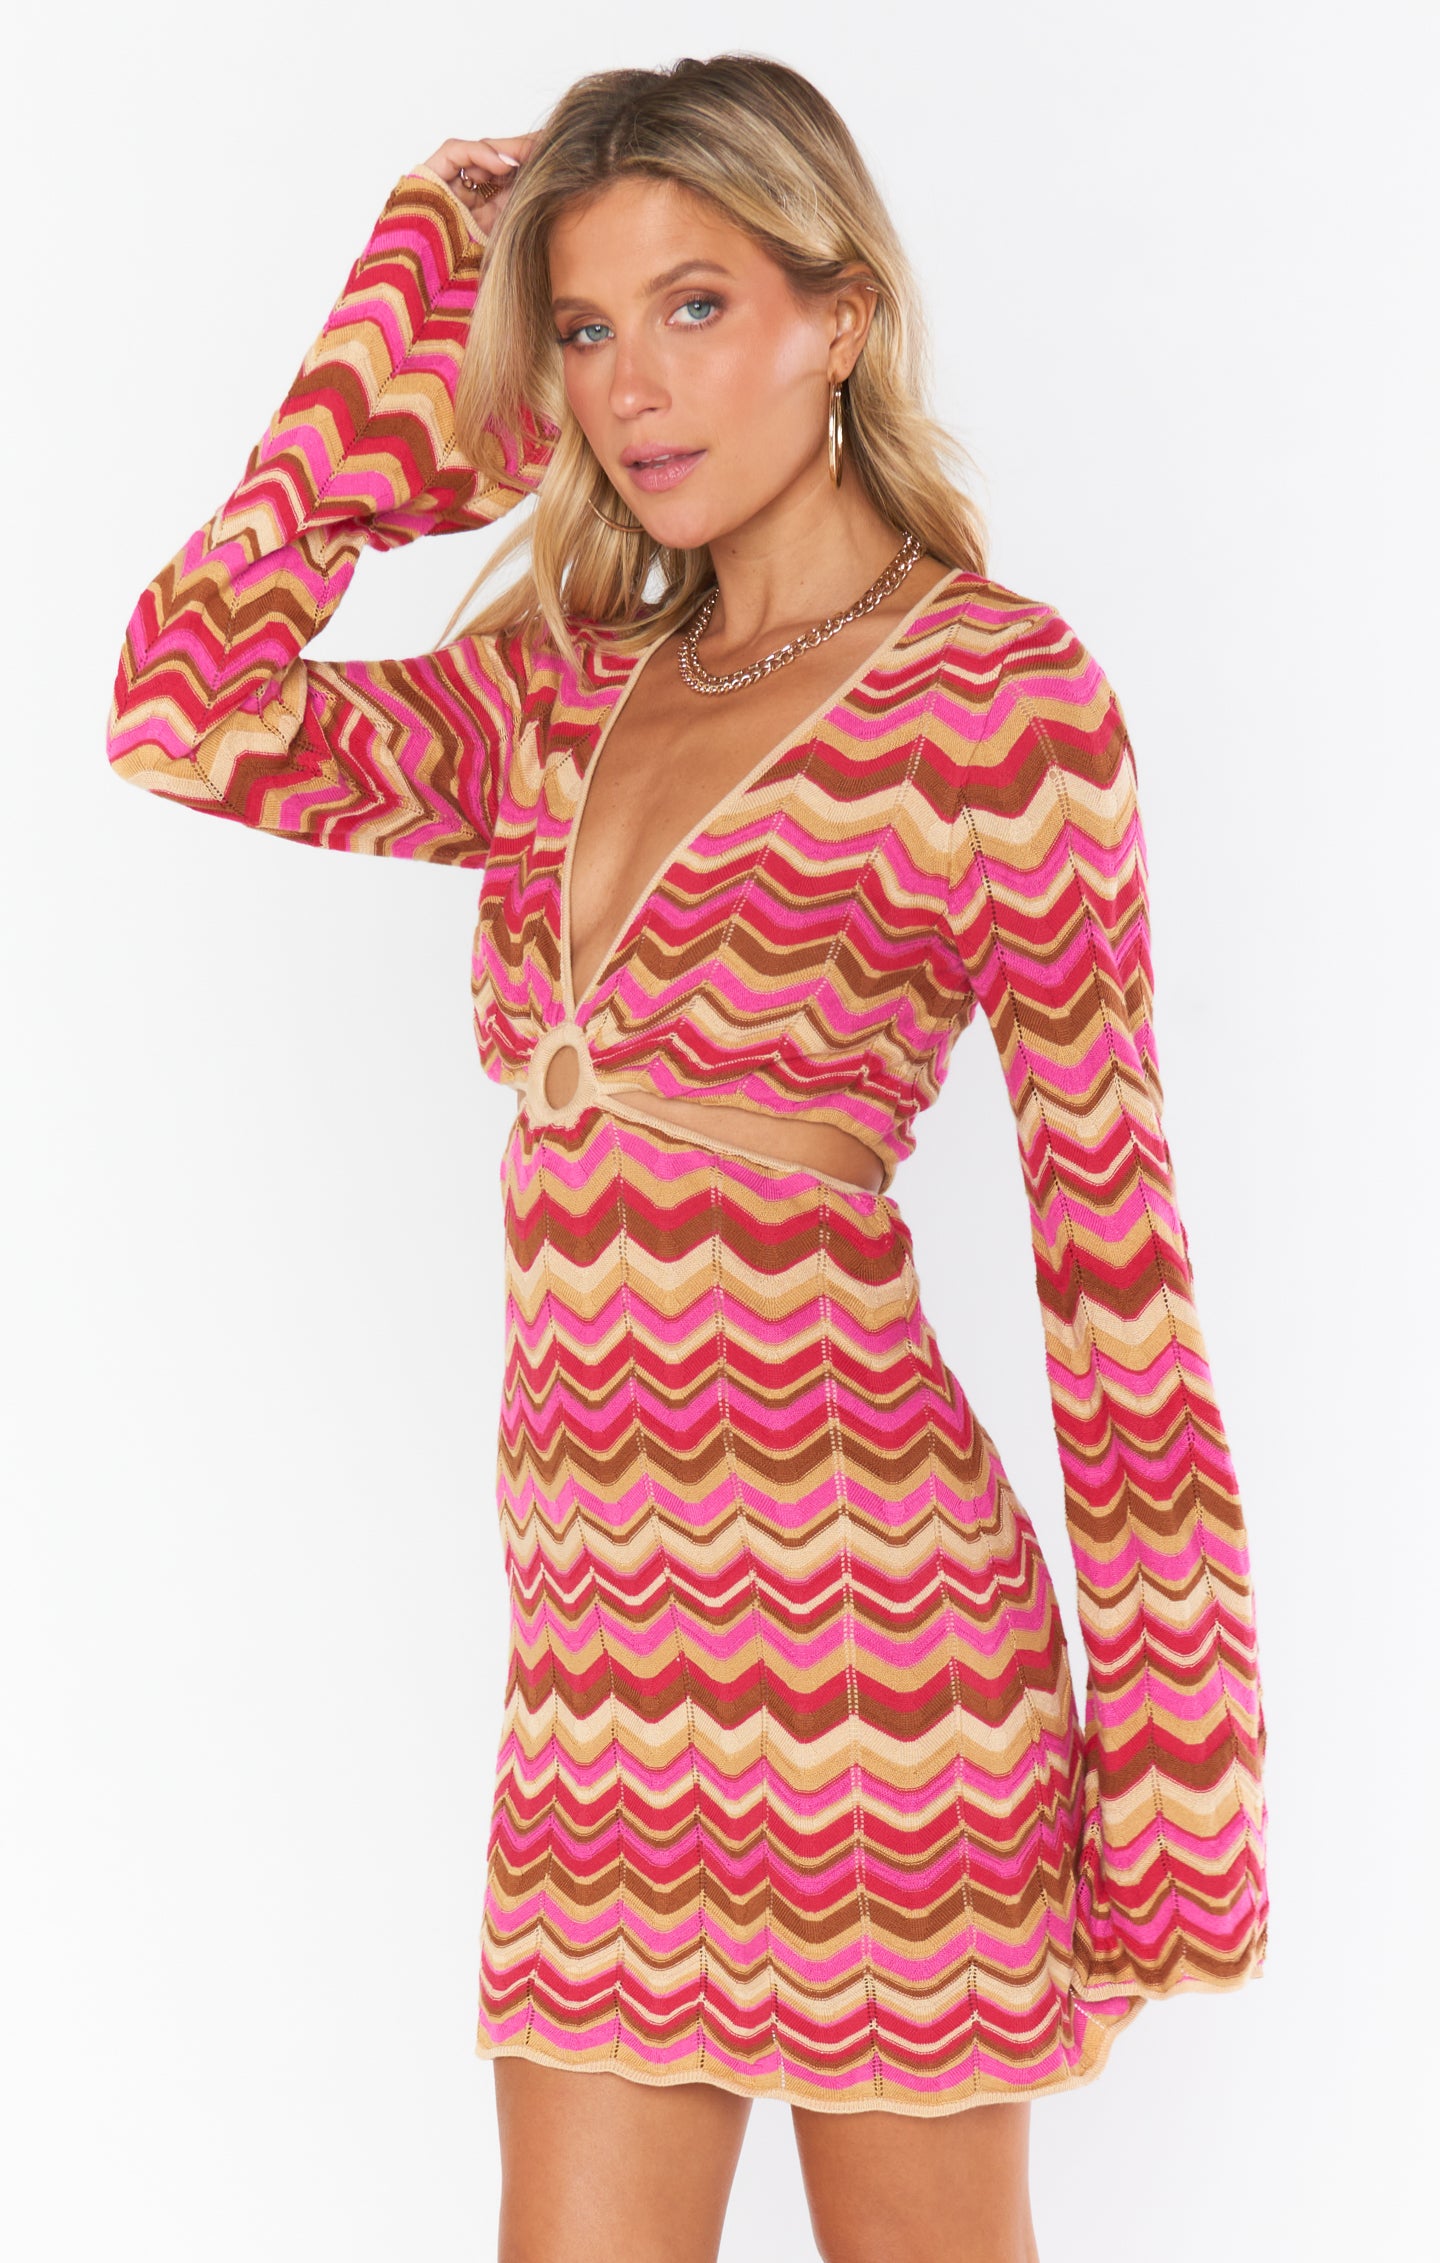 Show Mumu Horizon Knit | Me Your Stripe shopgirligirl Dress Carlo Cutout